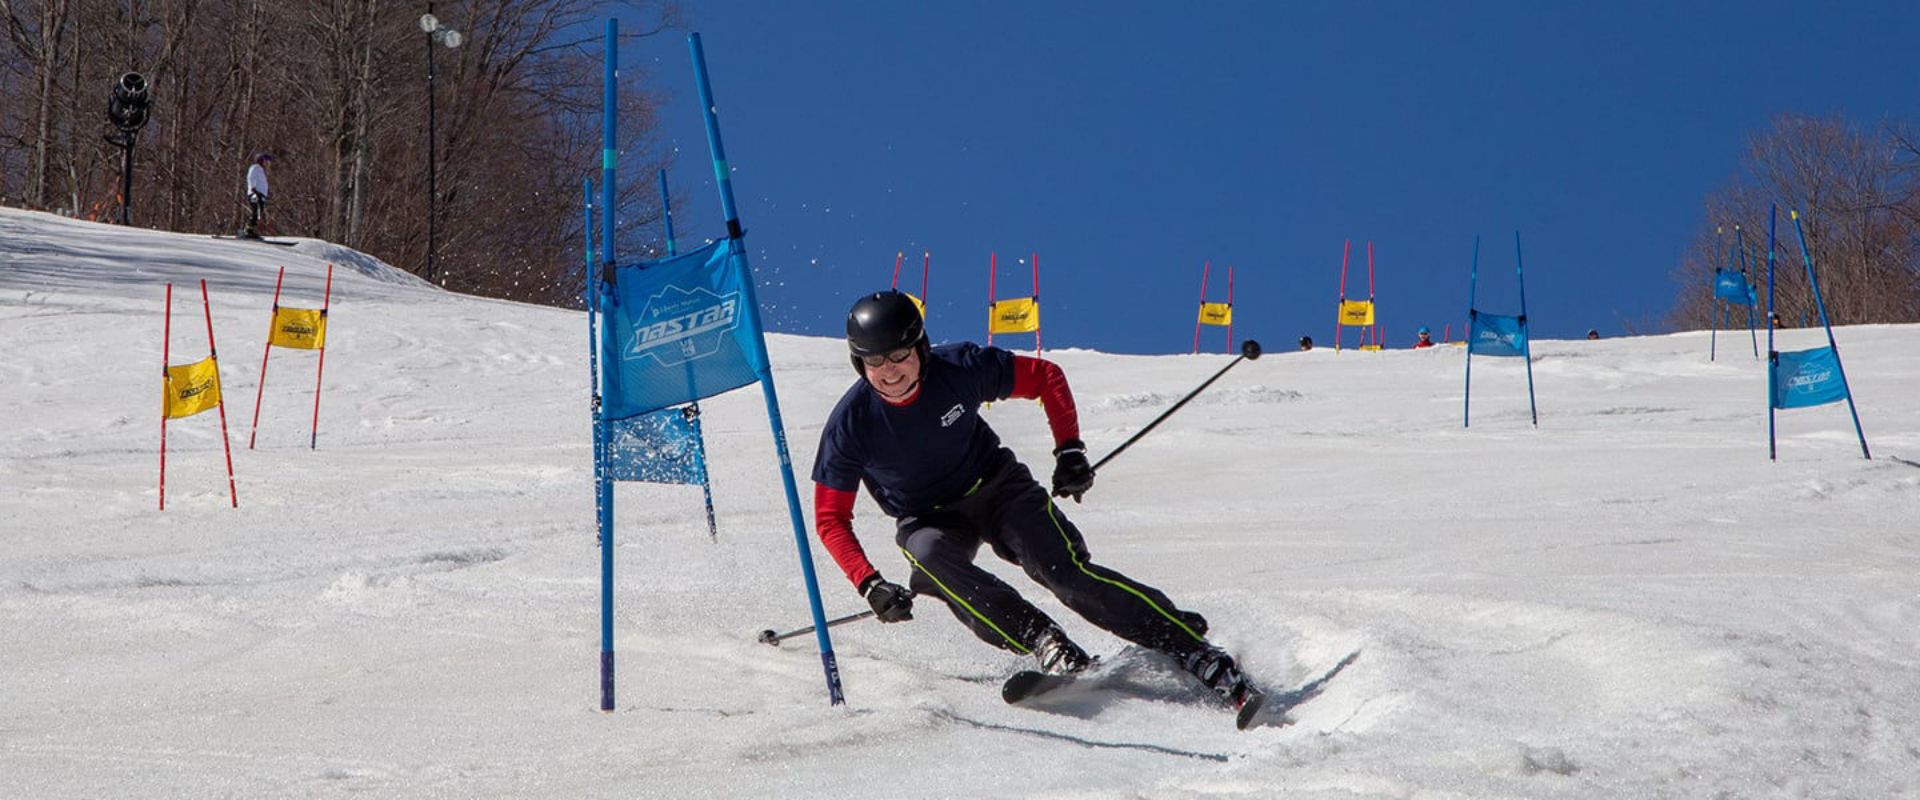 Hemlock Open Racer Skiing